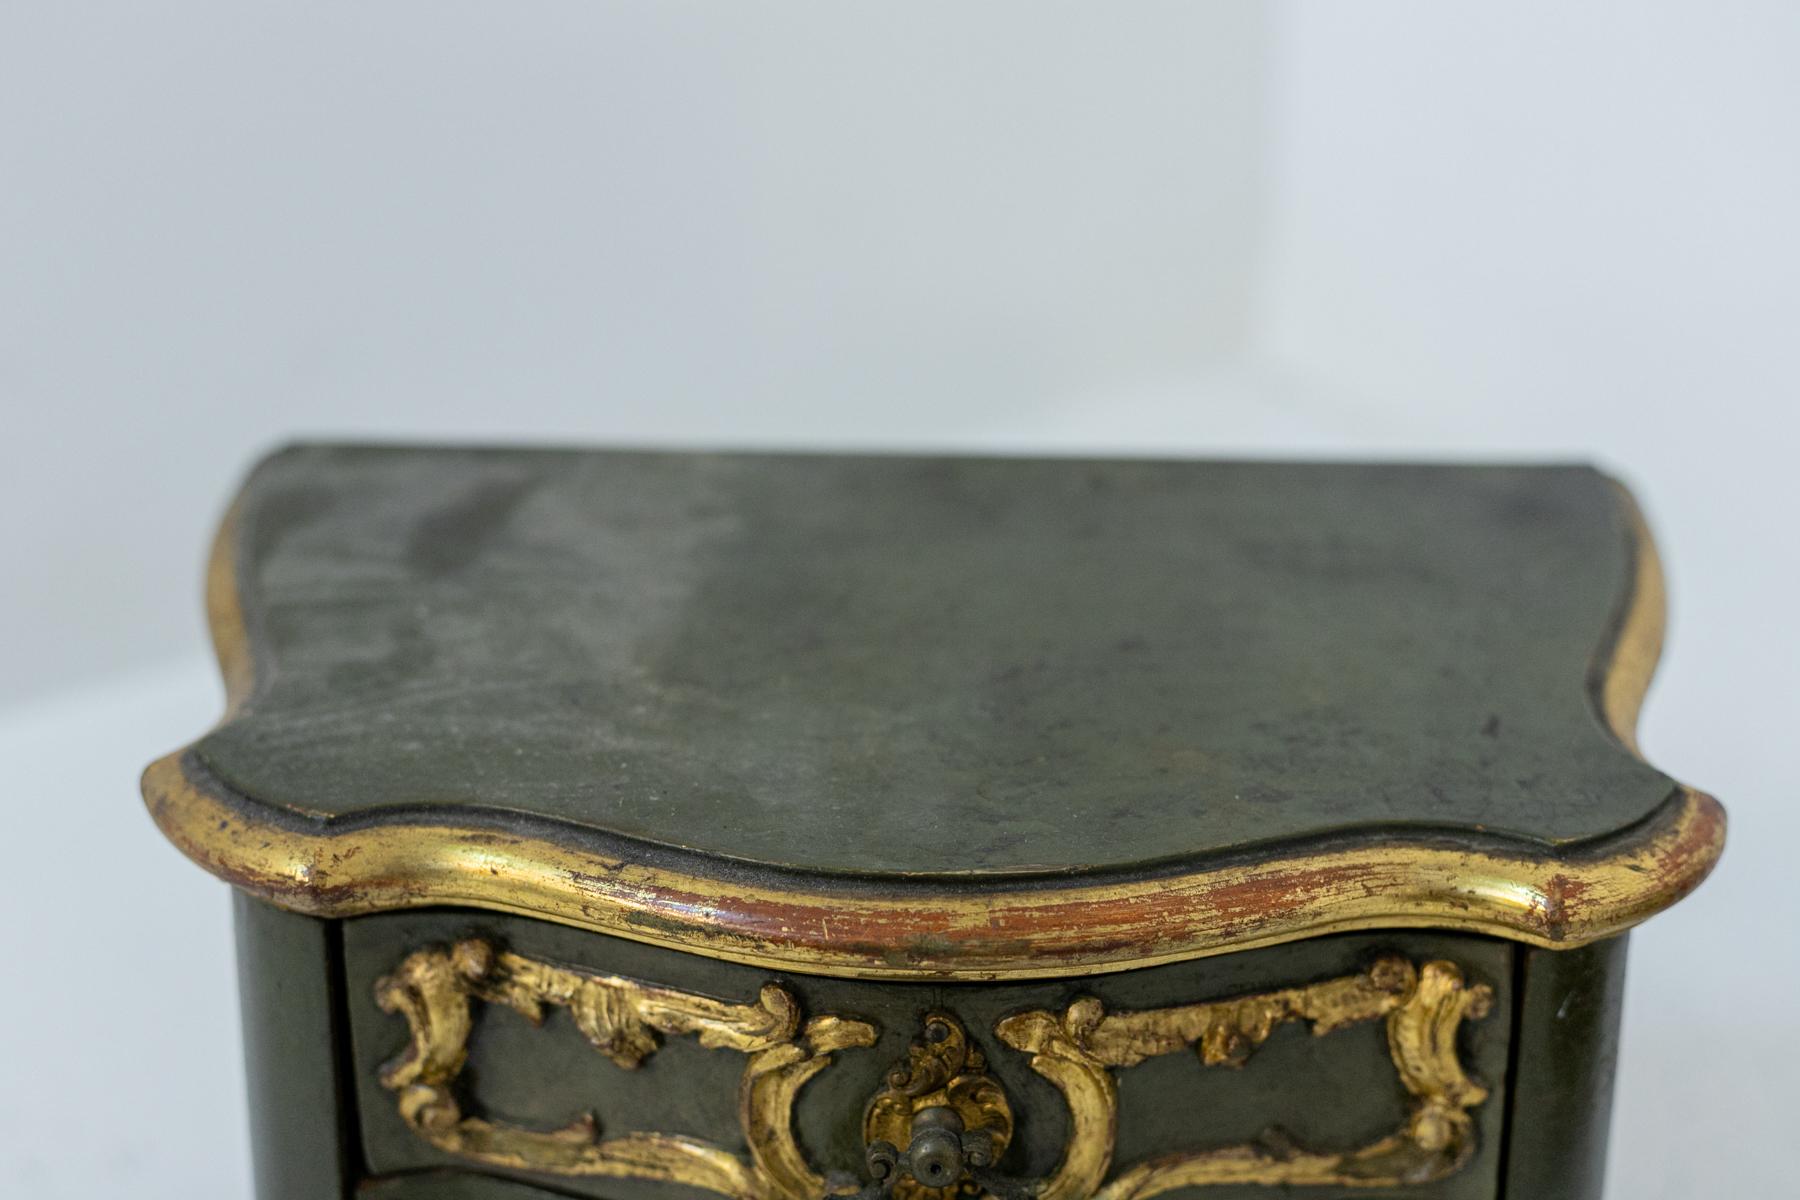 Splendide paire de boîtes à bijoux en bois du XVIIIe siècle, de belle facture française.
Les boîtes à bijoux ont des formes baroques et sont à la fois très courbes et audacieuses, ce qui crée un mélange parfait.
Les boîtes à bijoux sont fabriquées